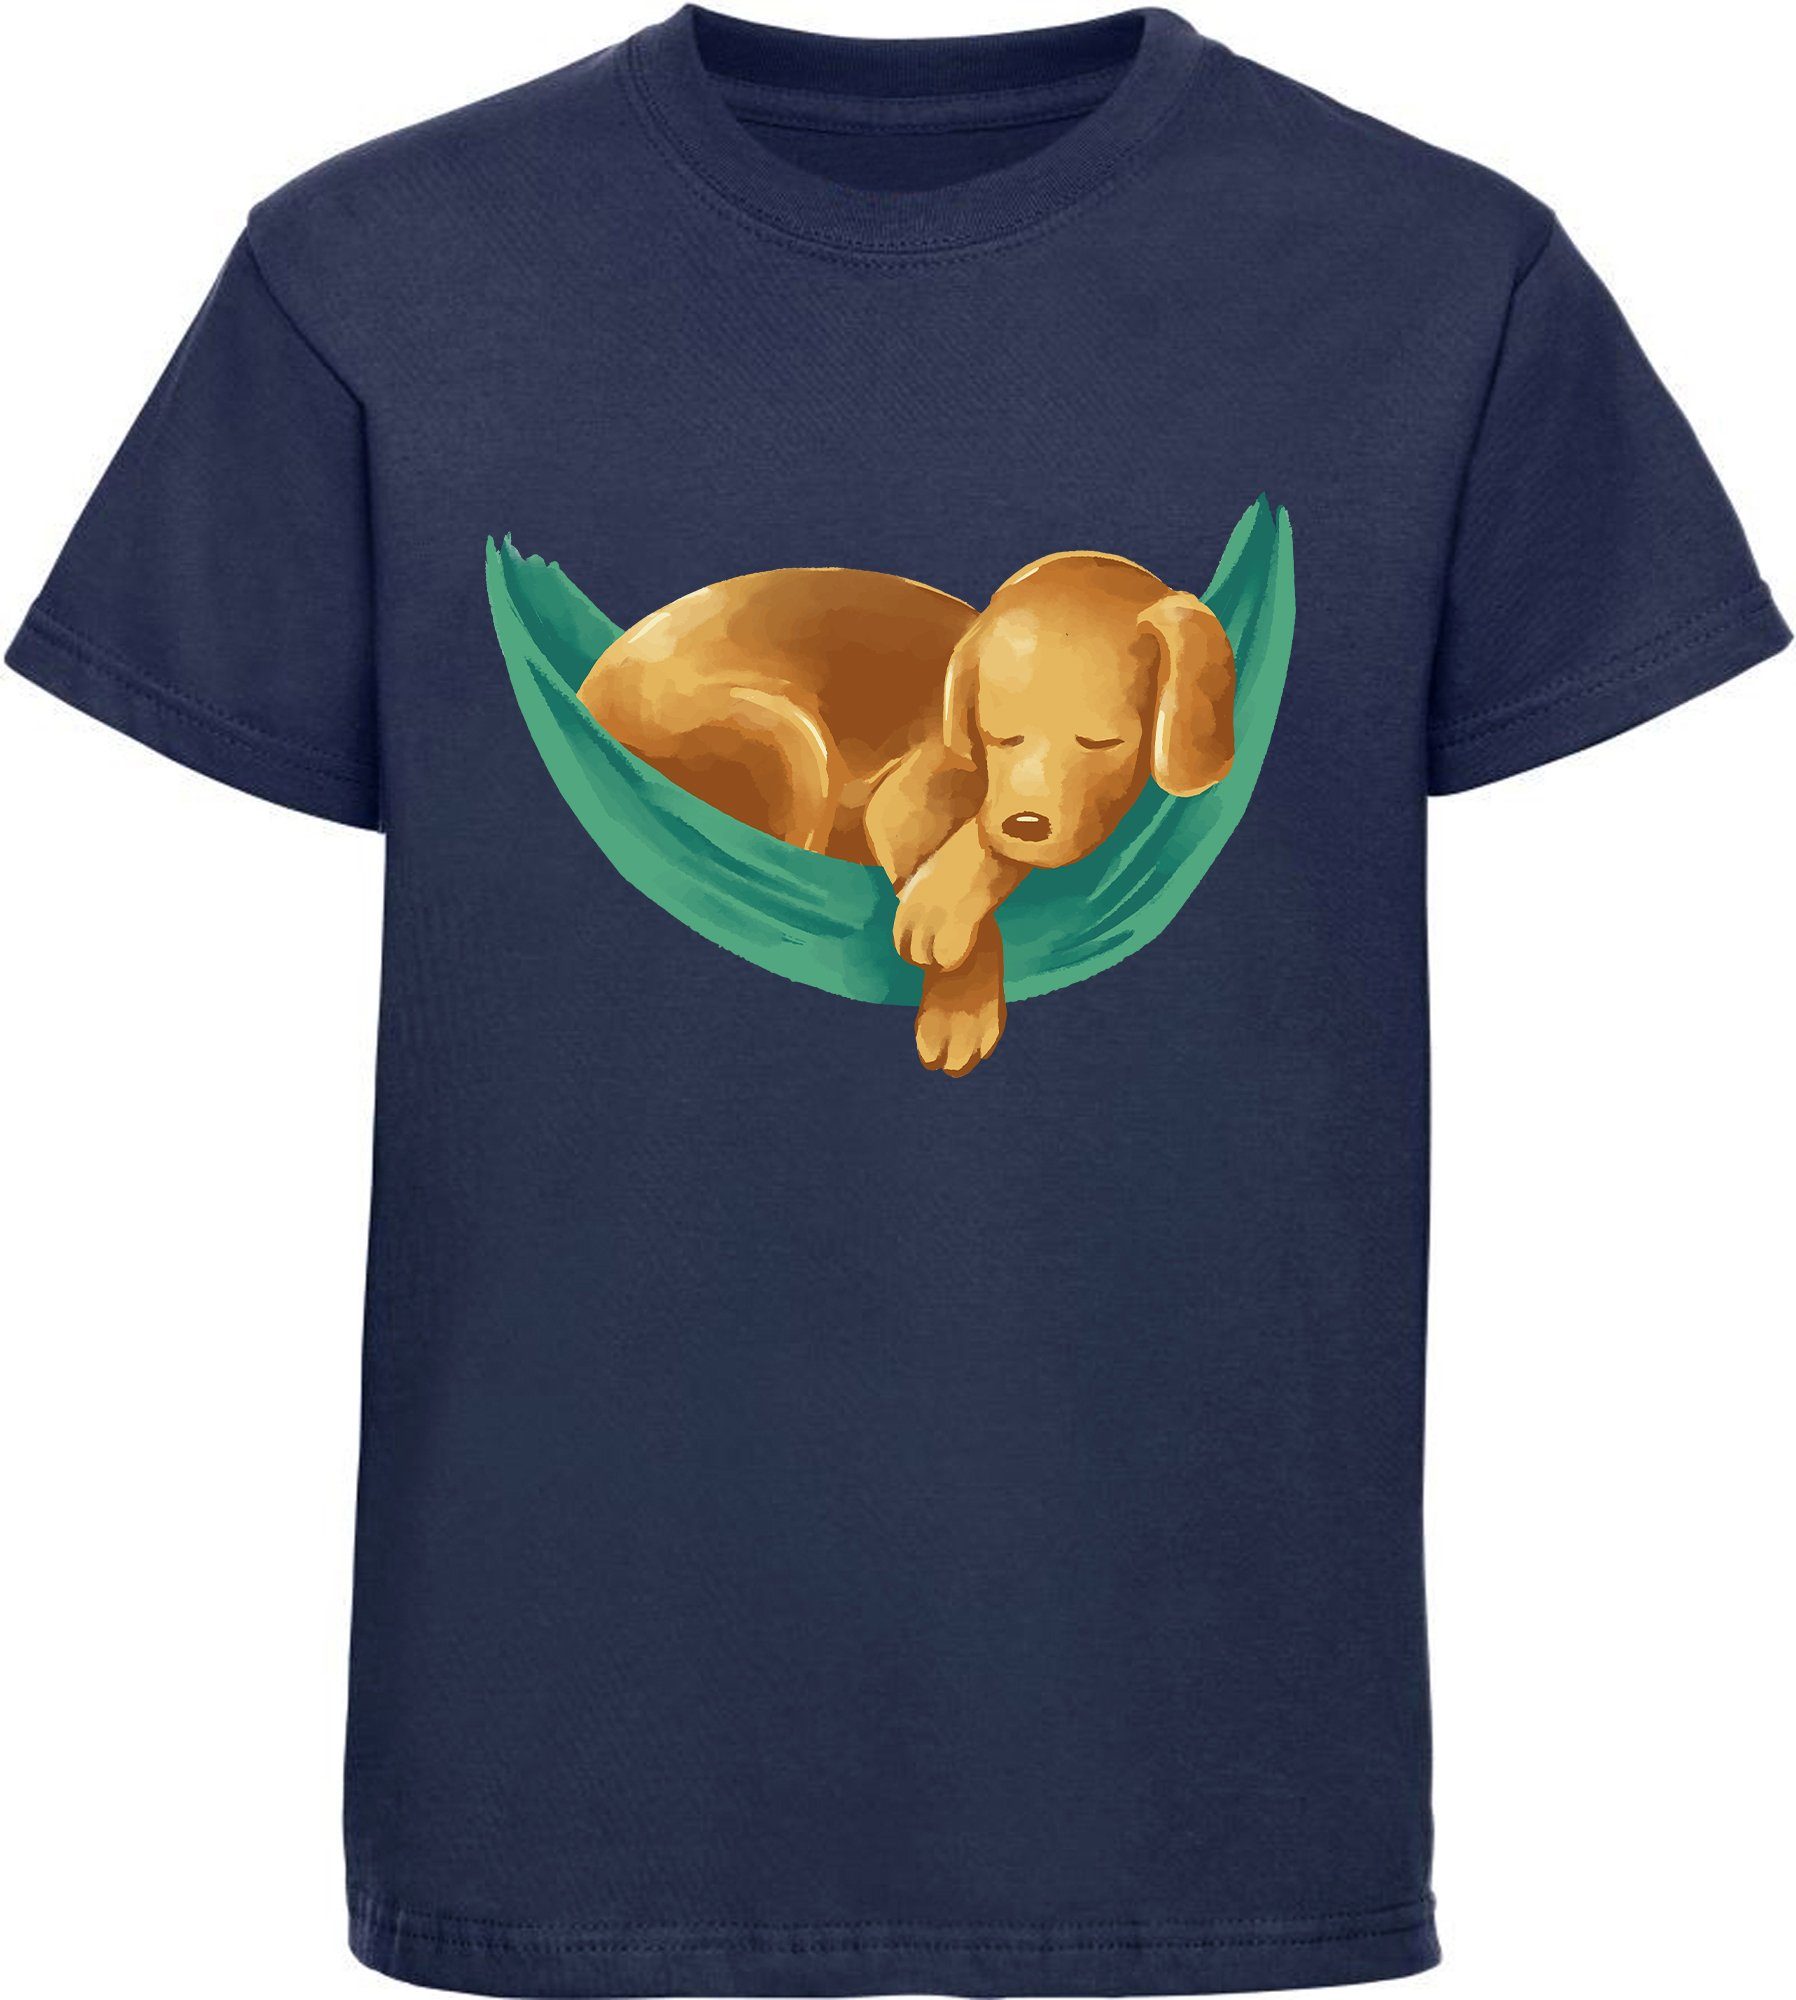 MyDesign24 T-Shirt Kinder Hunde Print Shirt bedruckt - Labrador Welpe in Hängematte Baumwollshirt mit Aufdruck, i245 navy blau | T-Shirts